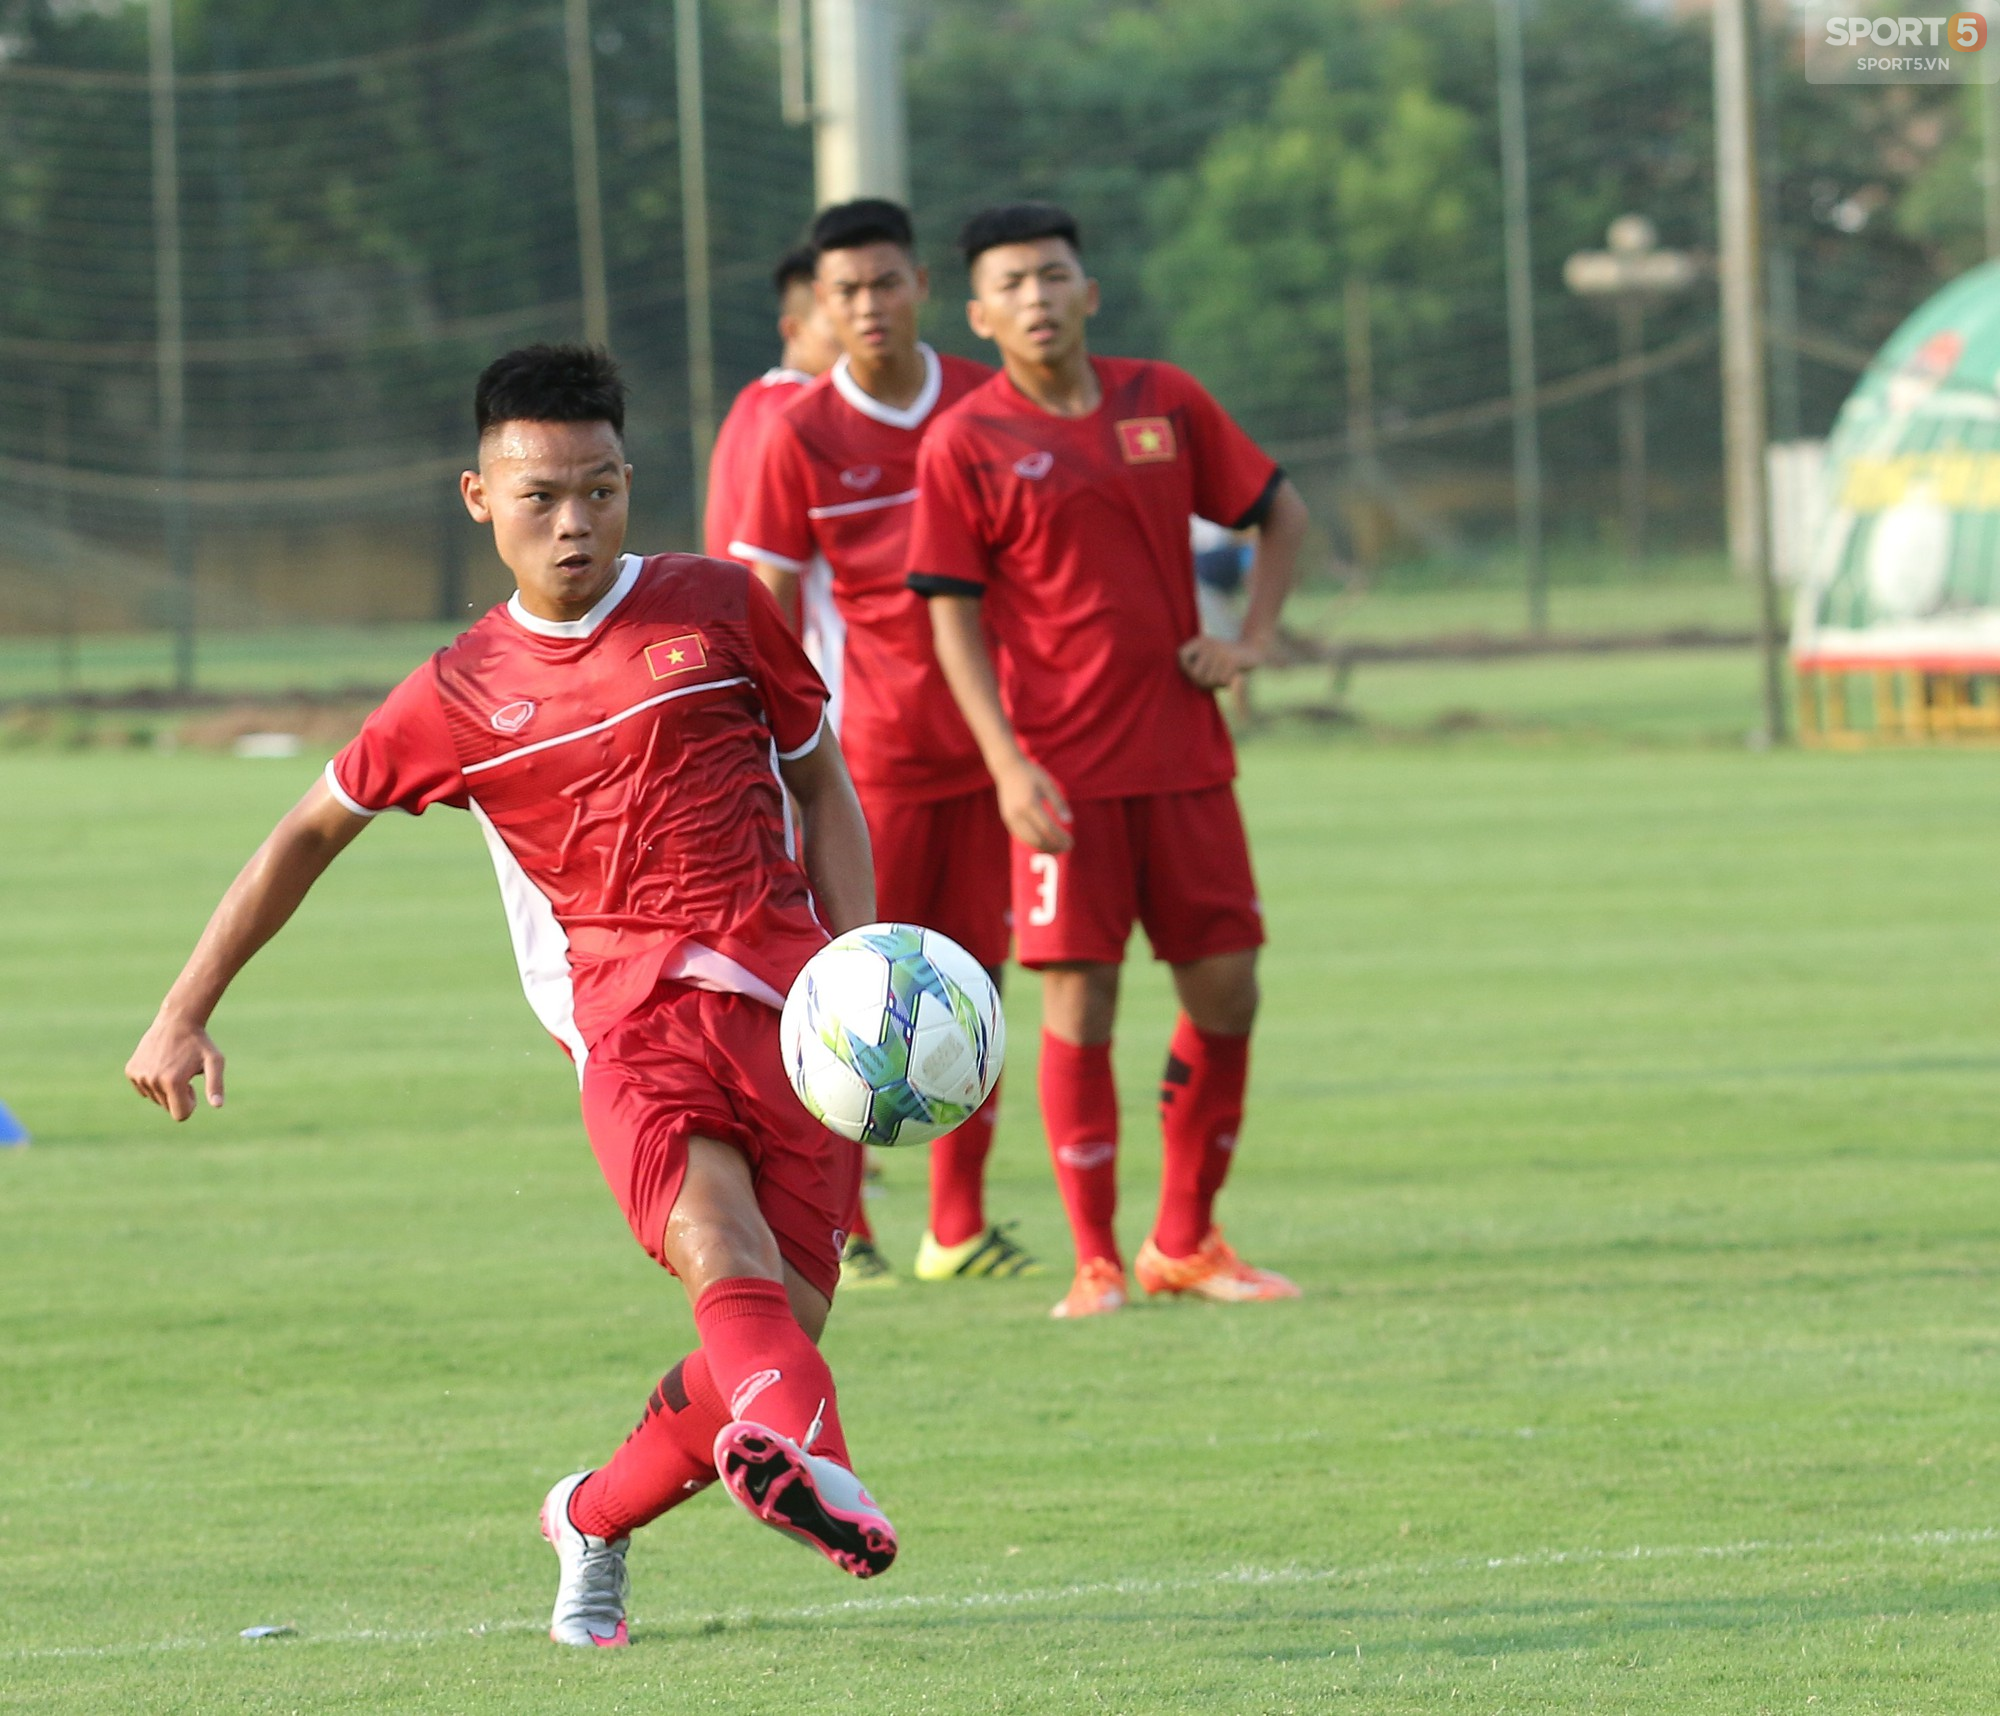 U16 Việt Nam rèn miếng đánh biên, hướng tới mục tiêu bảo vệ chức vô địch giải Đông Nam Á - Ảnh 4.